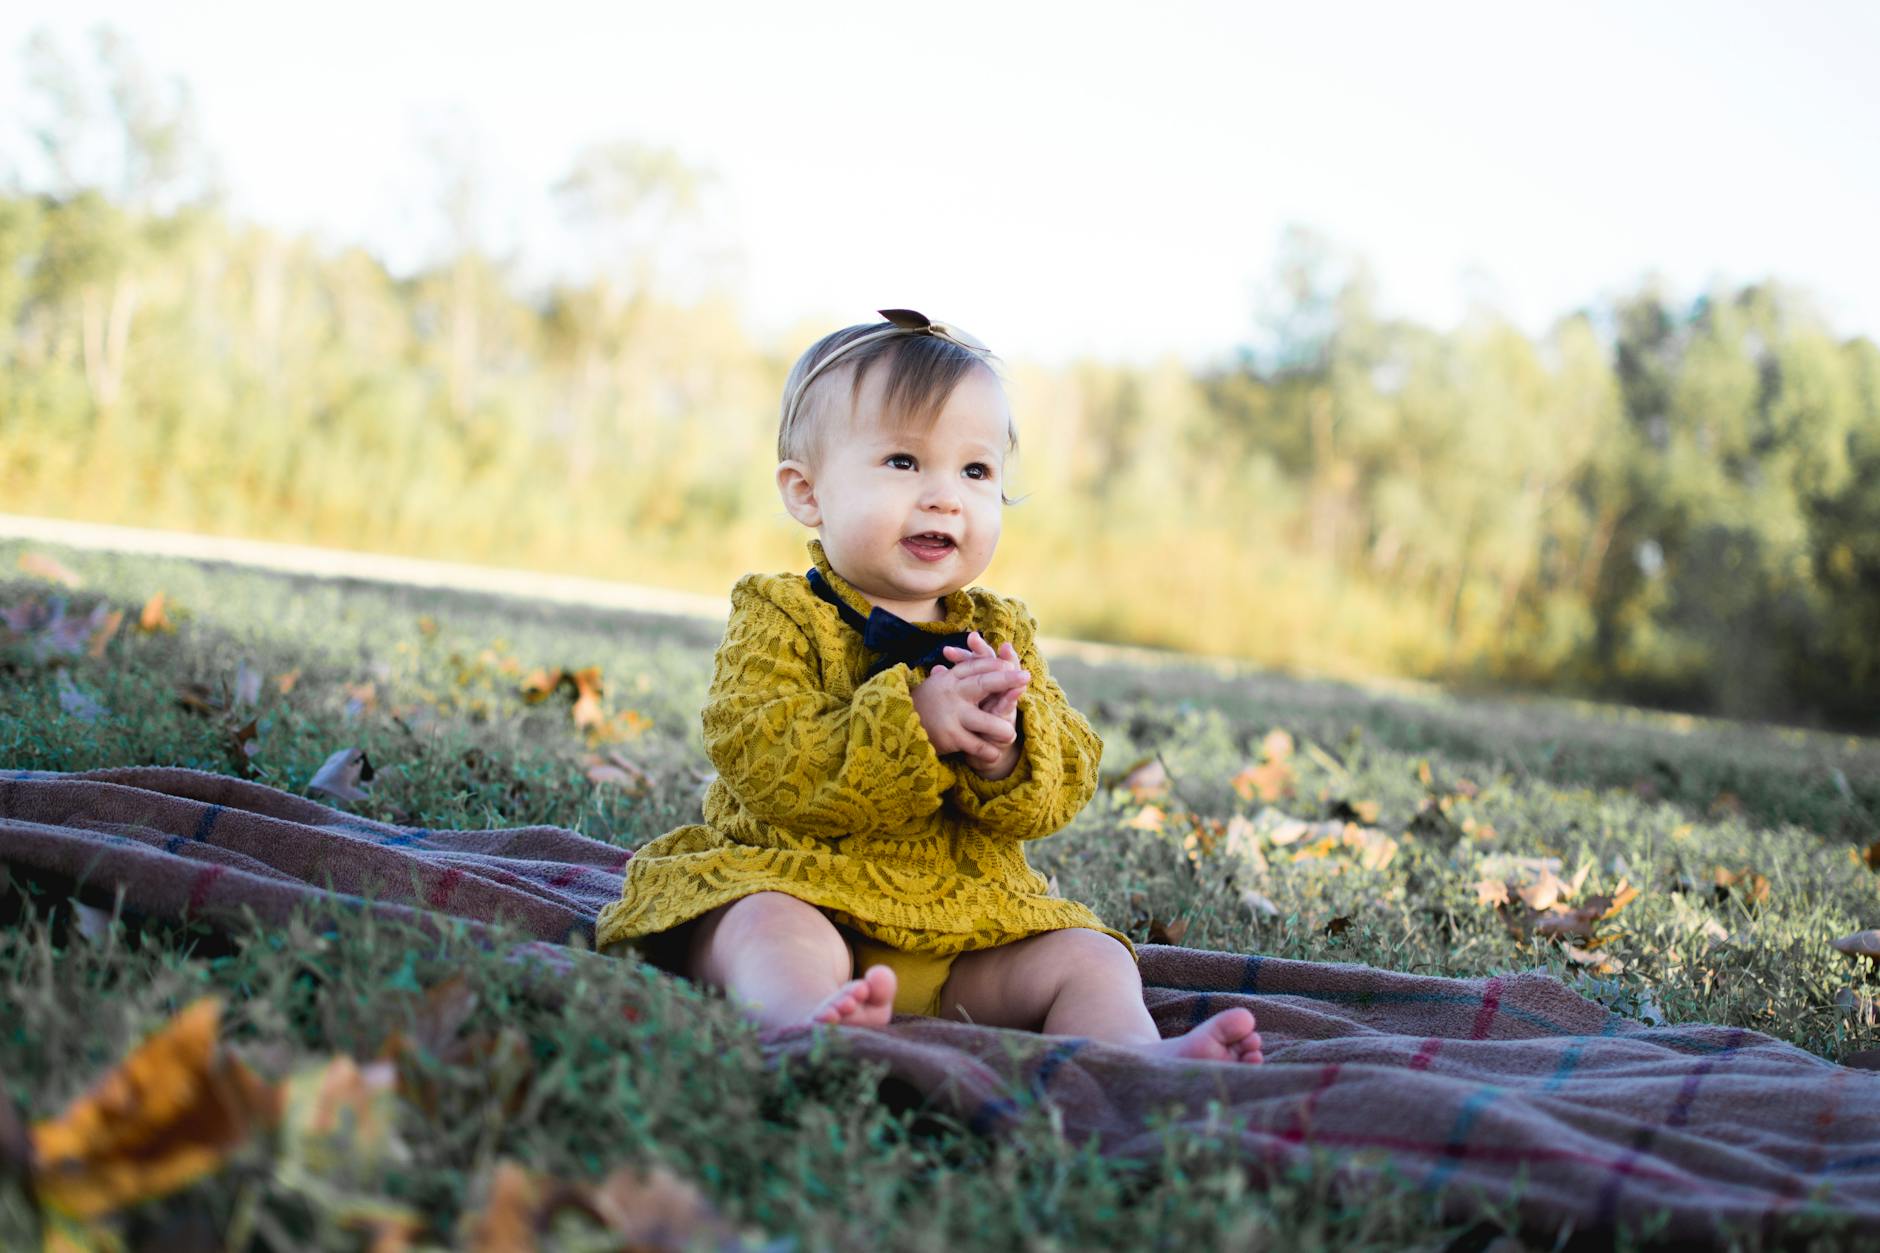 أجمل صور الاطفال | Heartwarming Baby Photos | جزء 2 Pexels-photo-713959